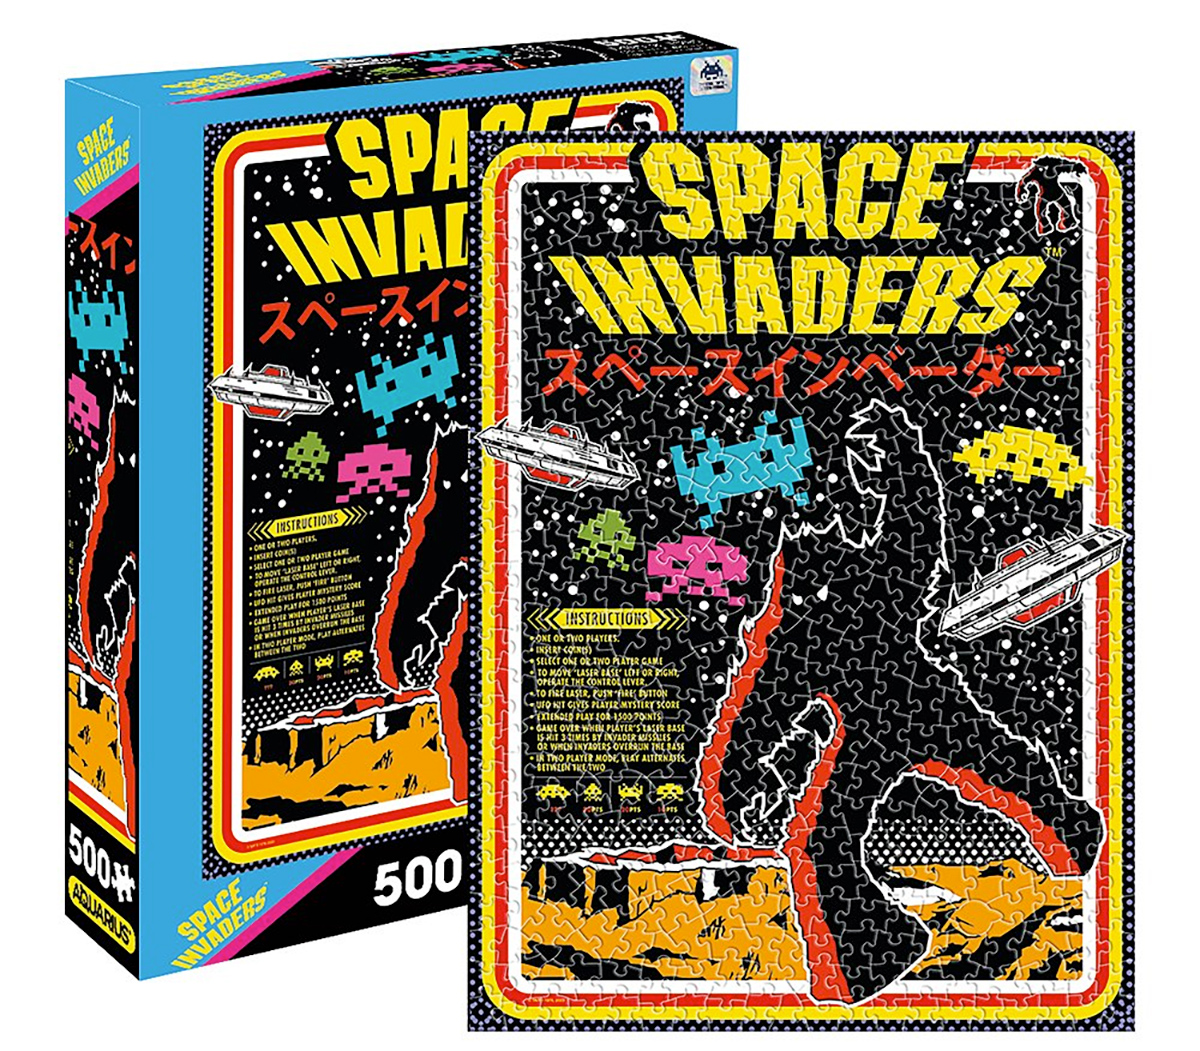 Quebra-Cabeça Space Invaders 8-bit Arcade com 550 Peças